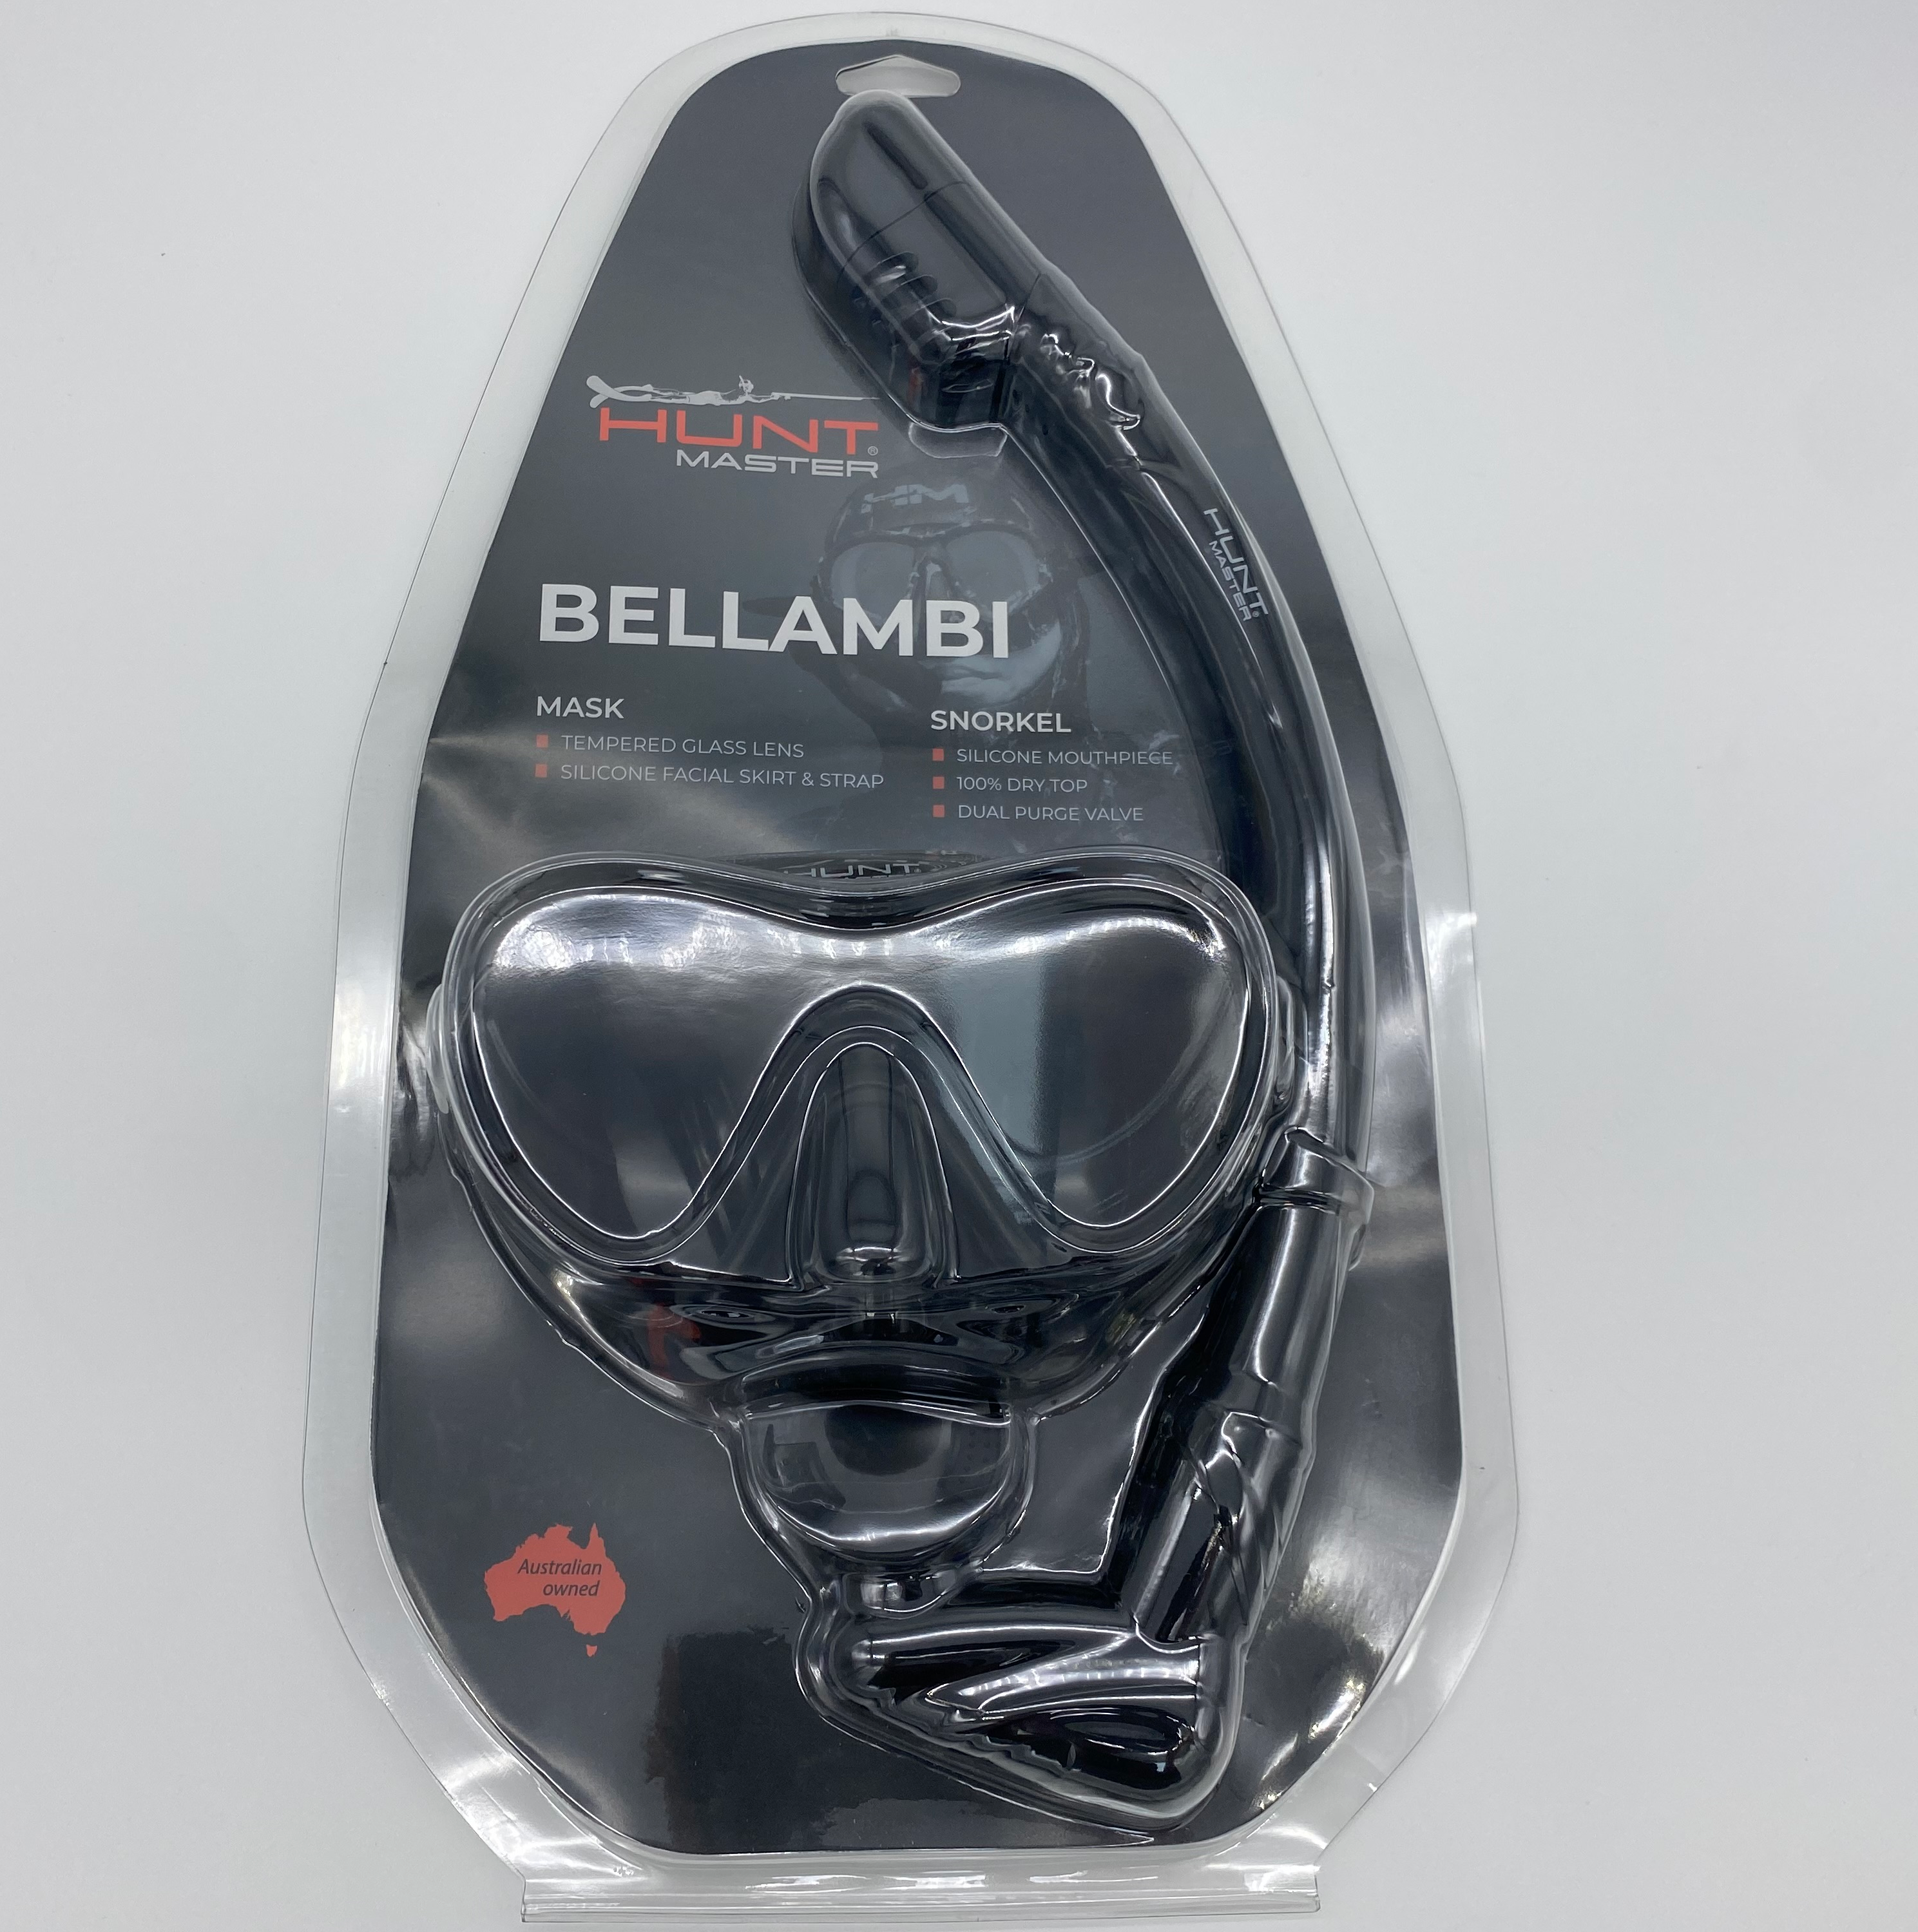 Bellambi Mask and Snorkel Set